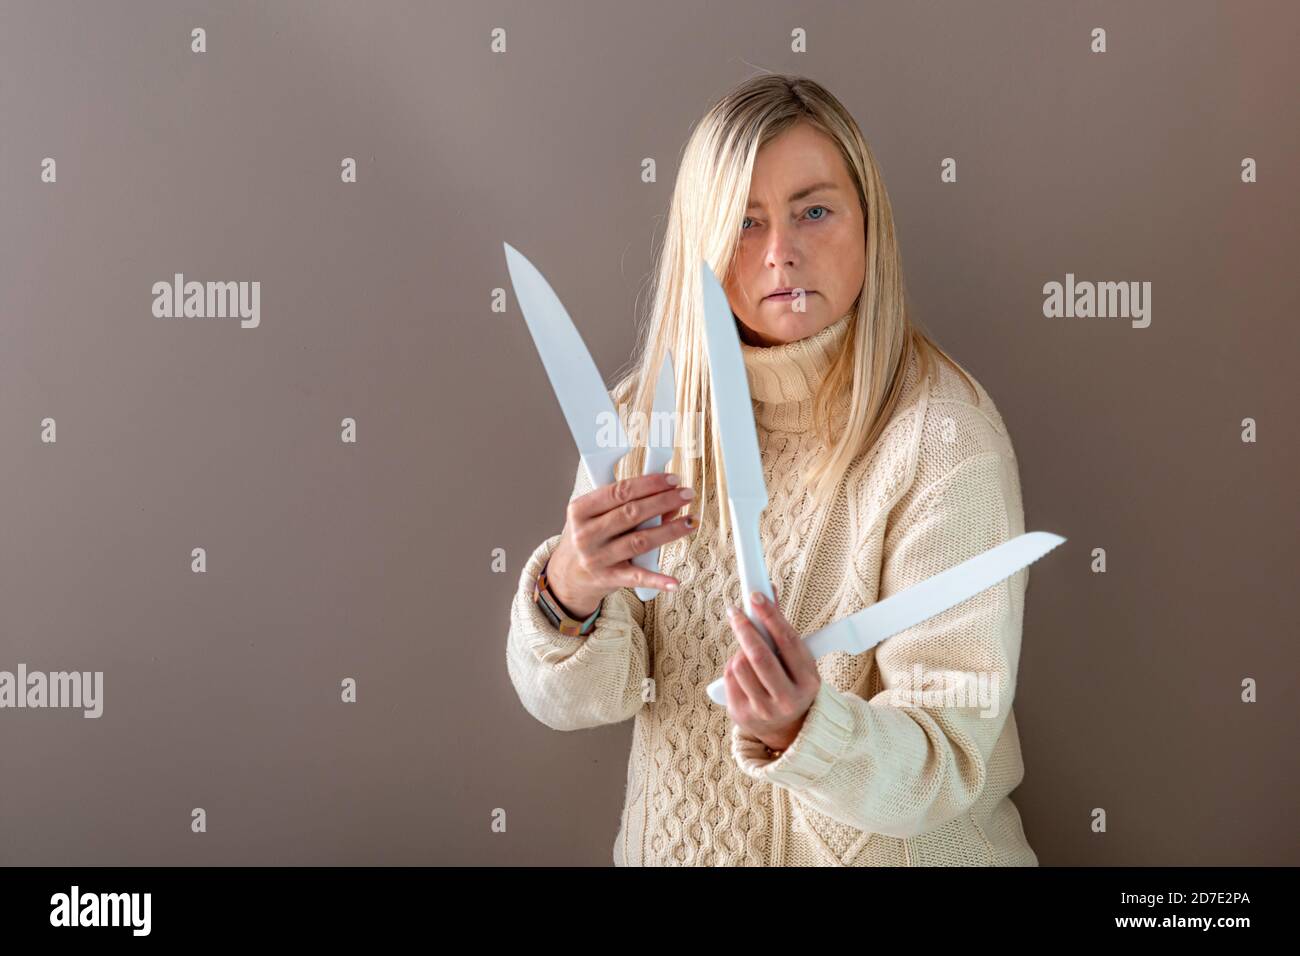 Blonde Frau gestikuliert emotional mit Messern, isoliert auf einem dunklen Hintergrund Stockfoto